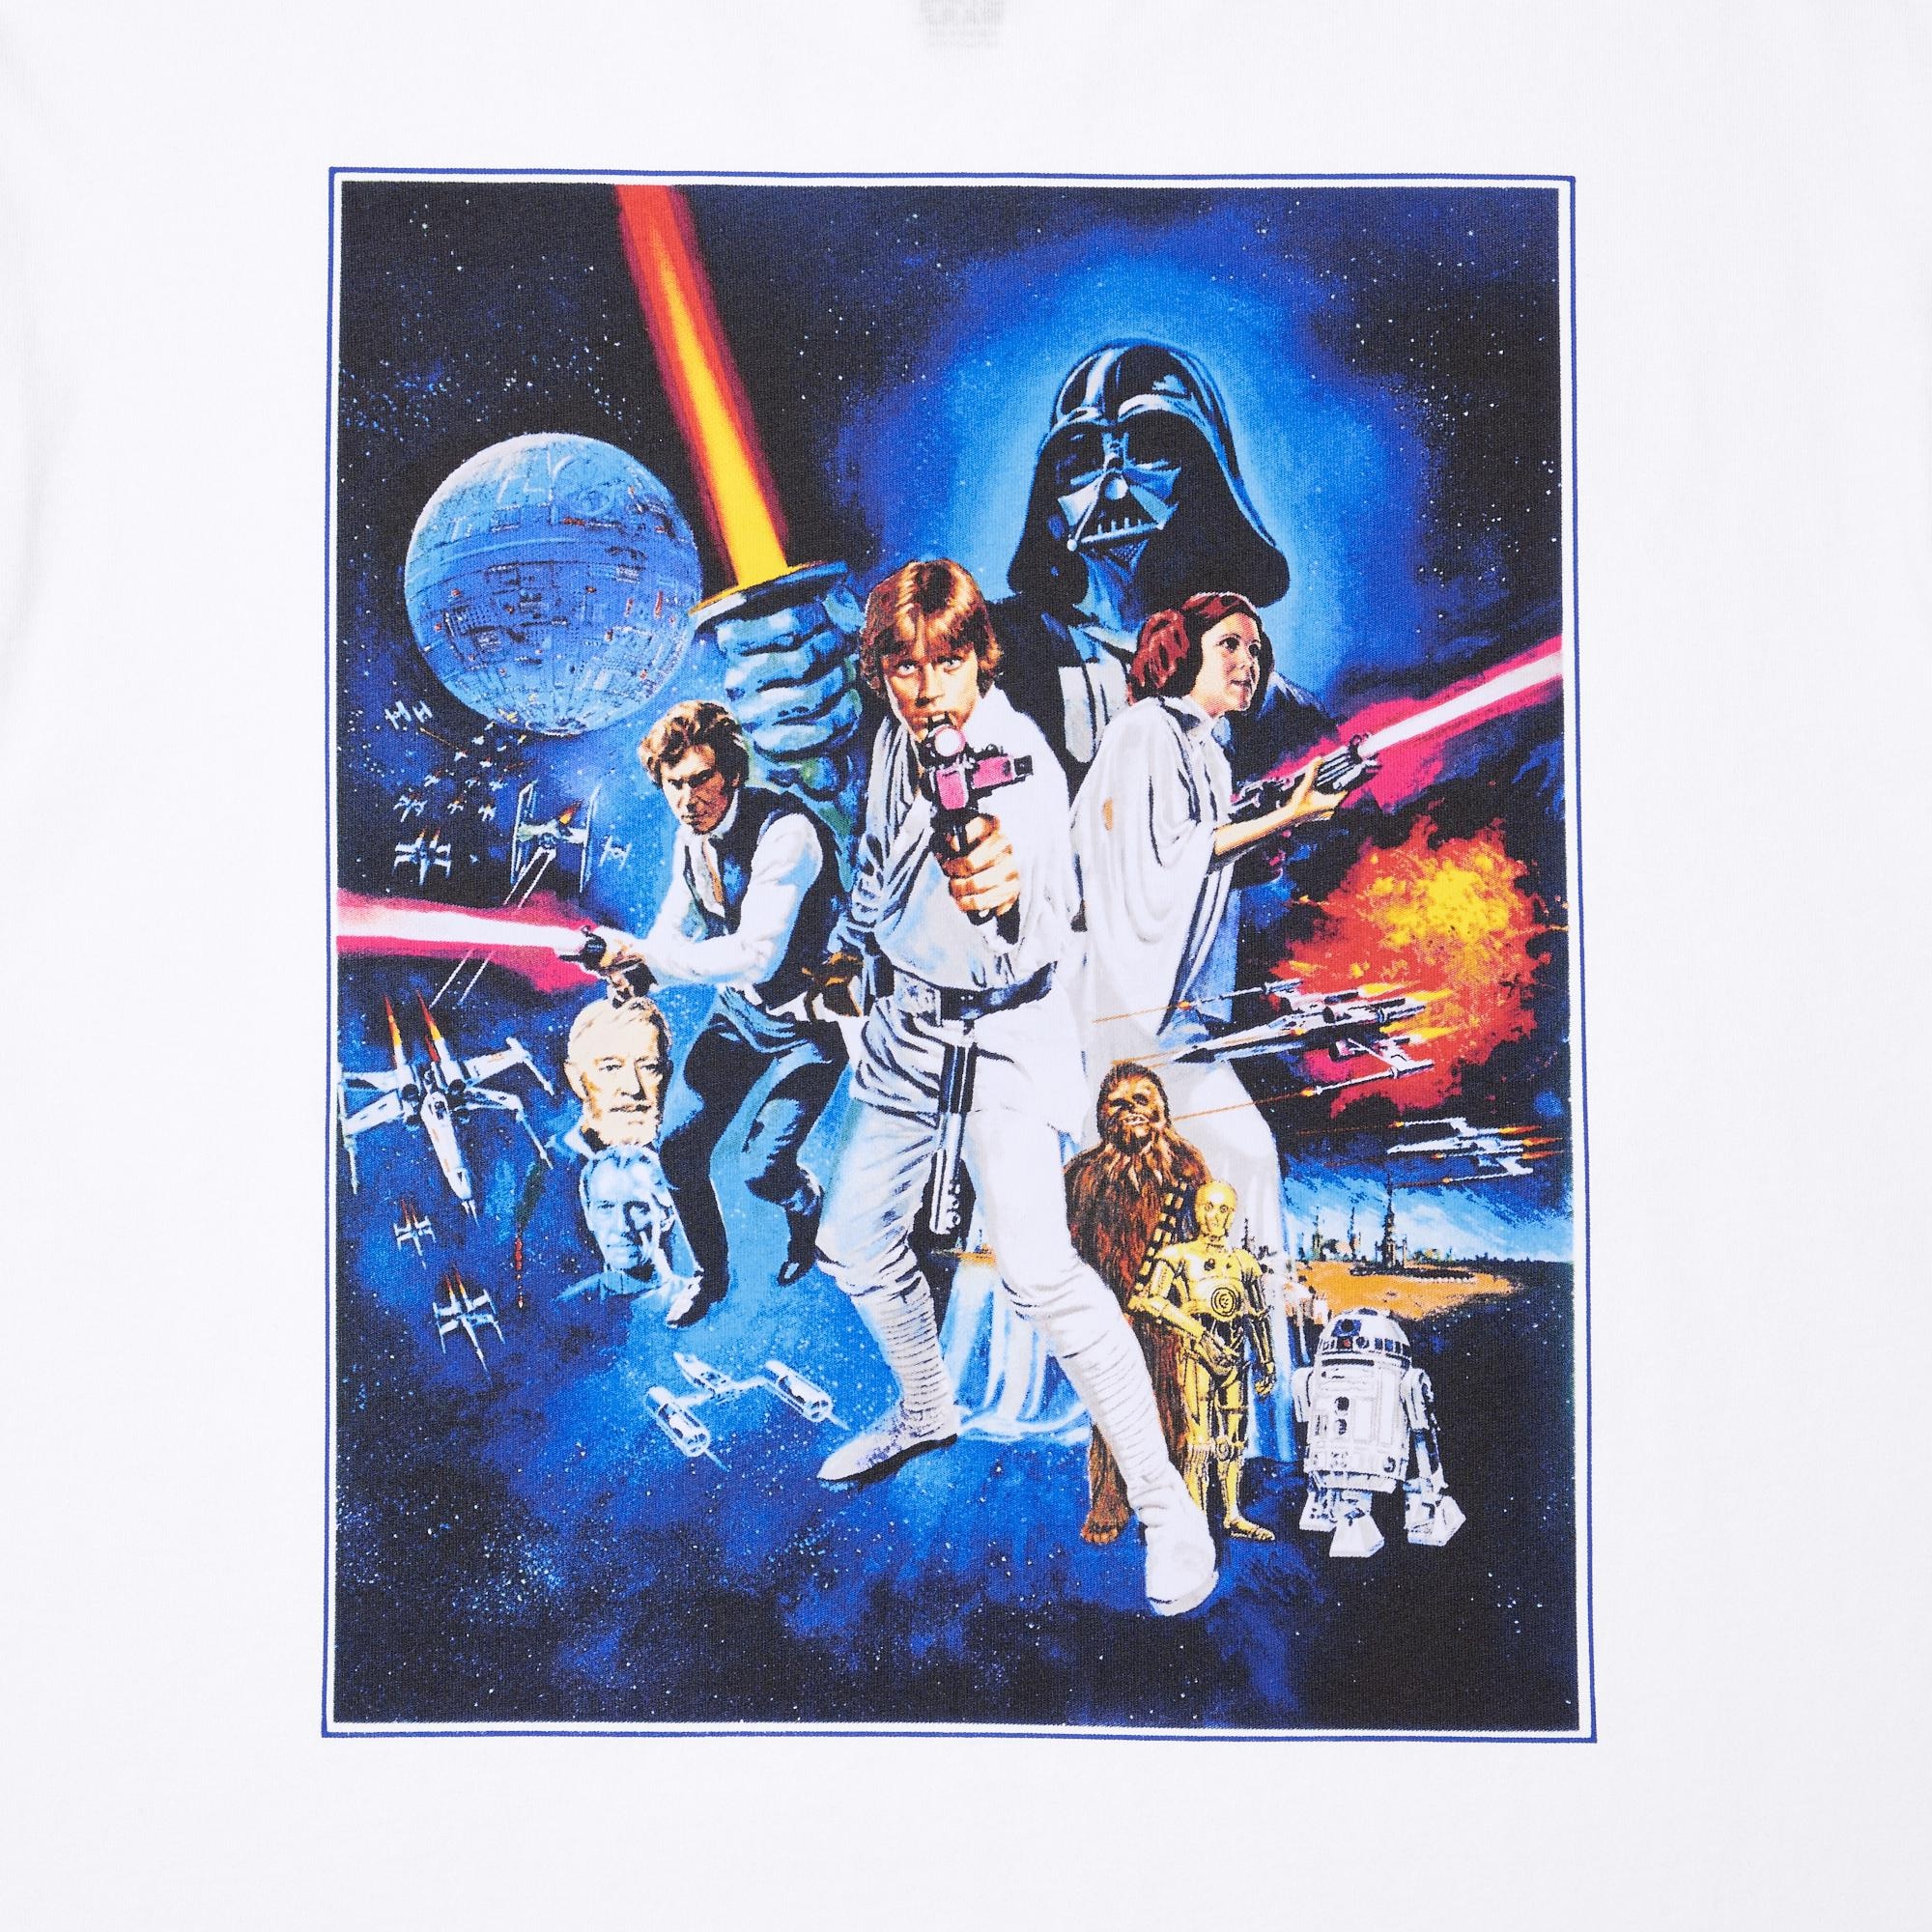 Star Wars: Remastered by Kosuke Kawamura UT (Short-Sleeve Graphic T-Shirt)